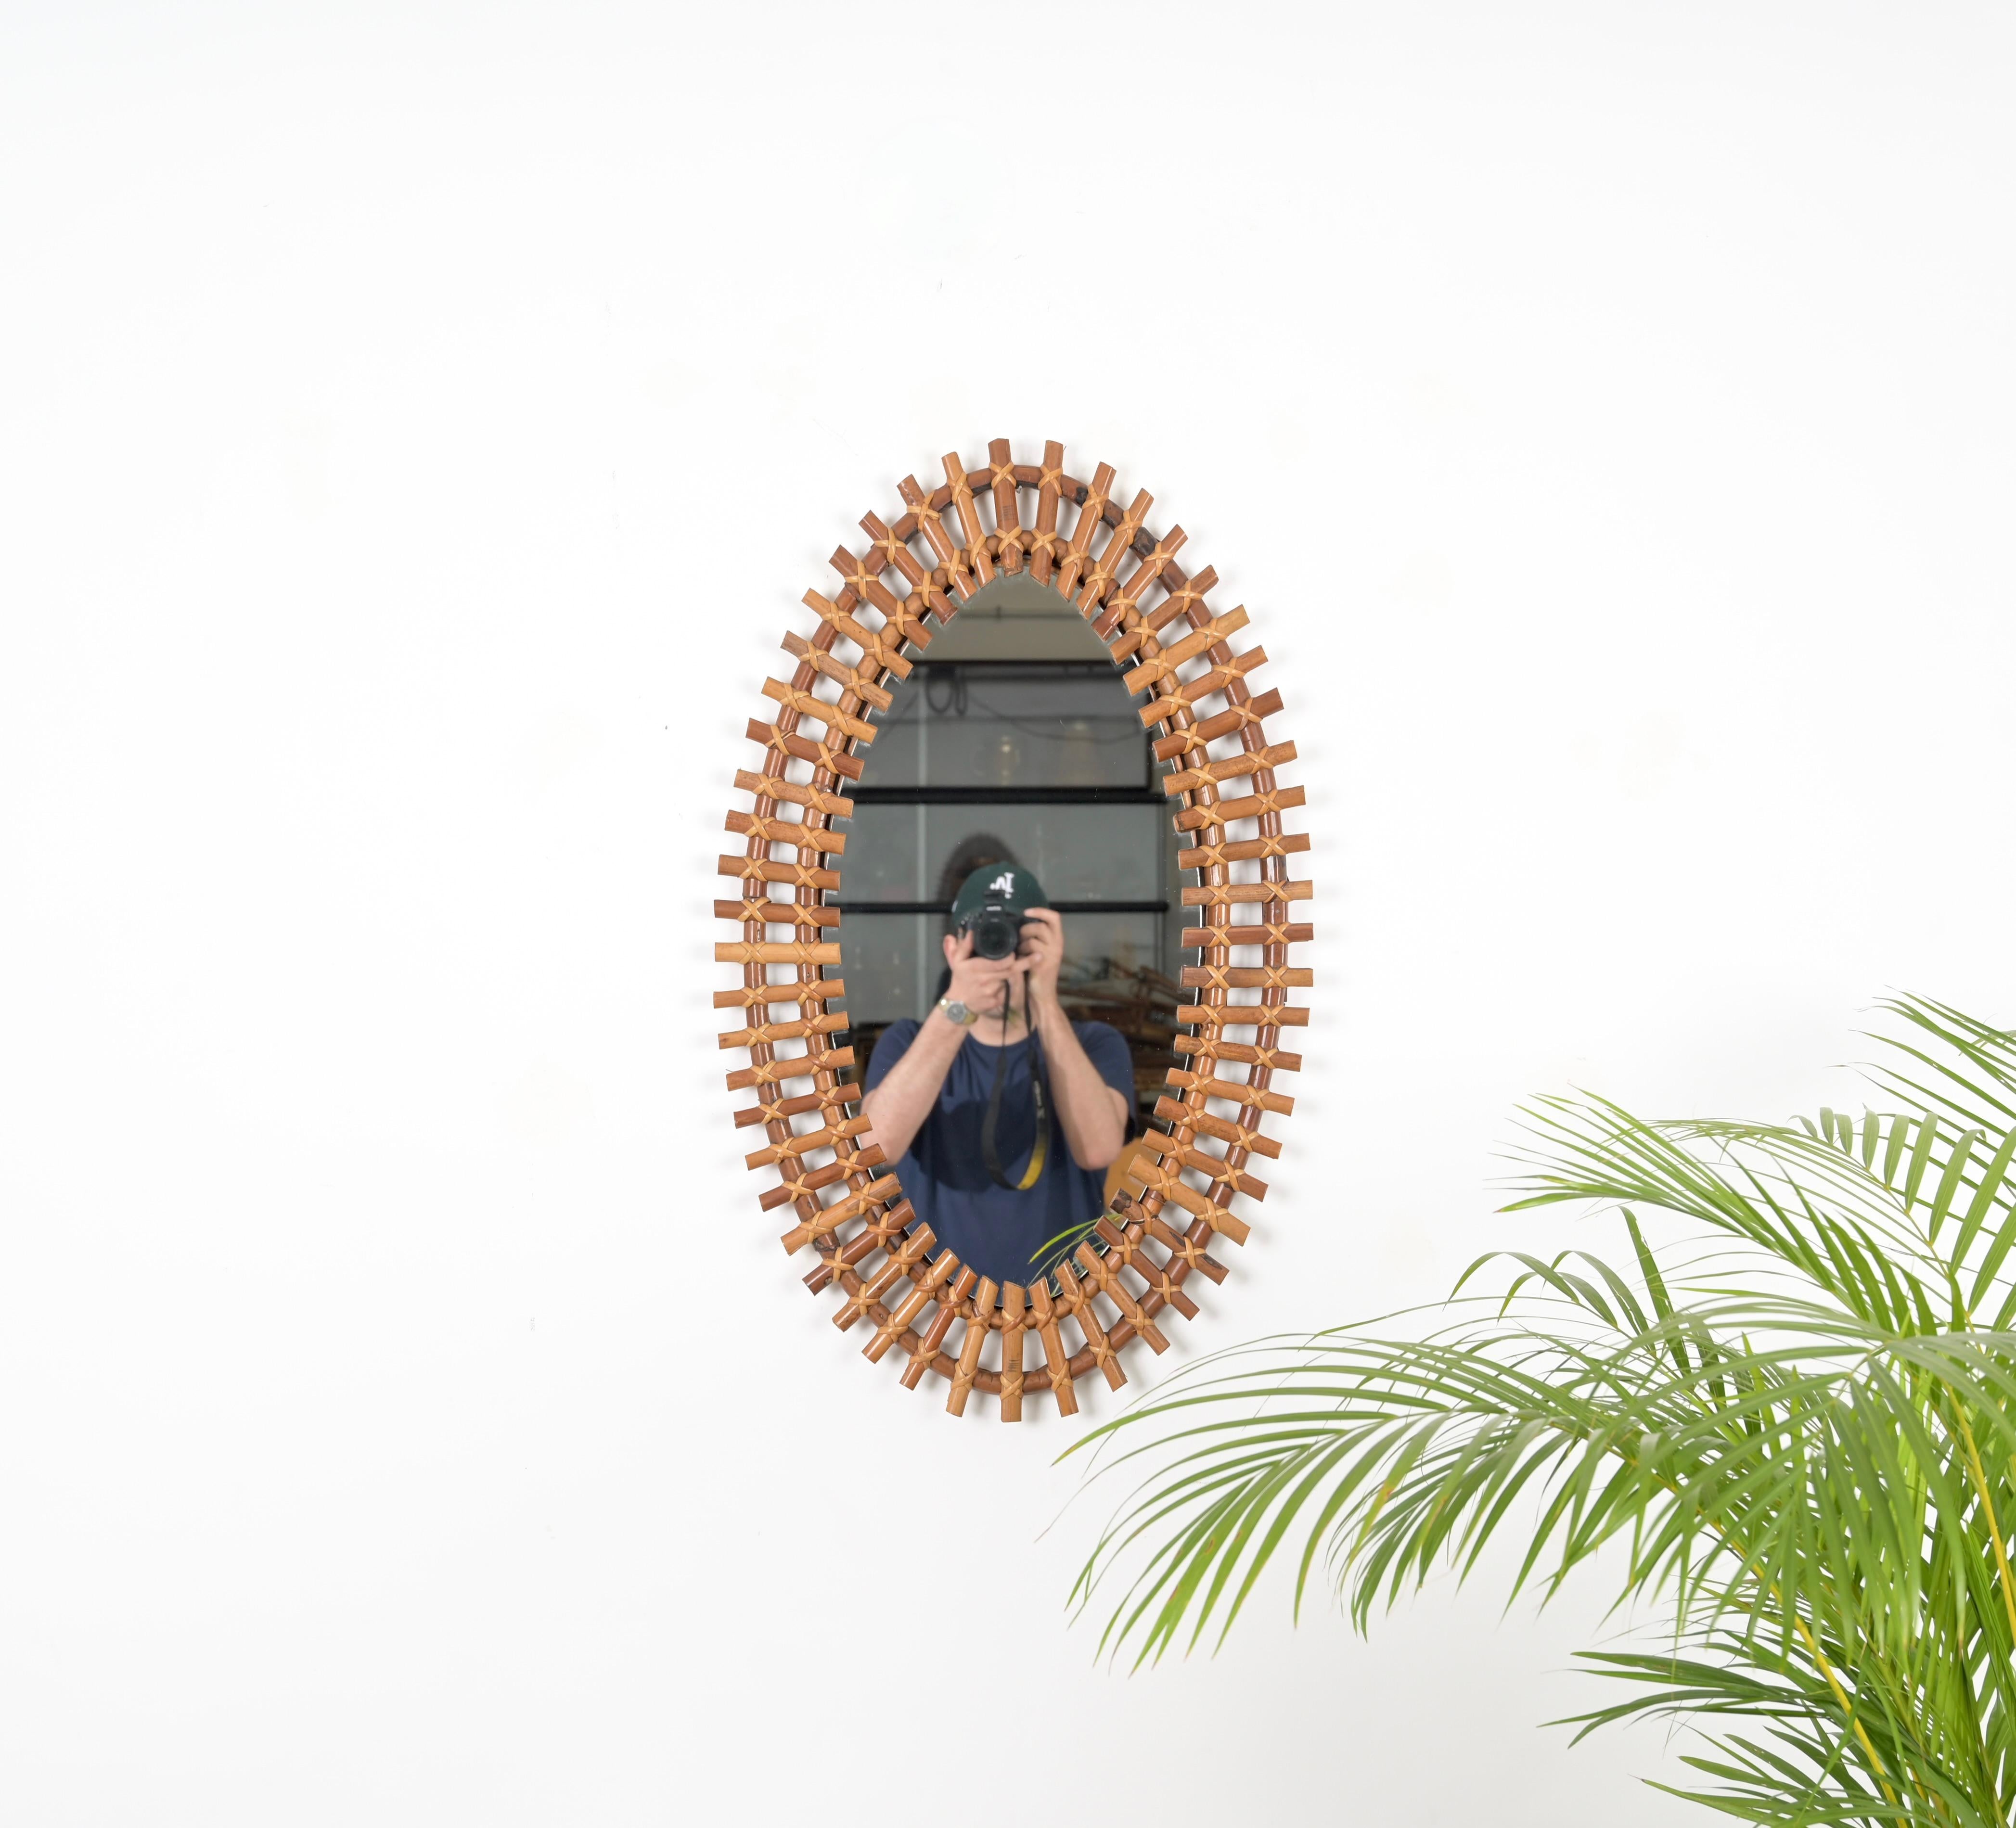 Magnifique grand miroir mural ovale en bambou, rotin et osier, ce magnifique miroir a été fabriqué en Italie dans les années 1960. 

Ce charmant miroir présente une magnifique  double armature en rotin courbé traversée par de petits inserts en